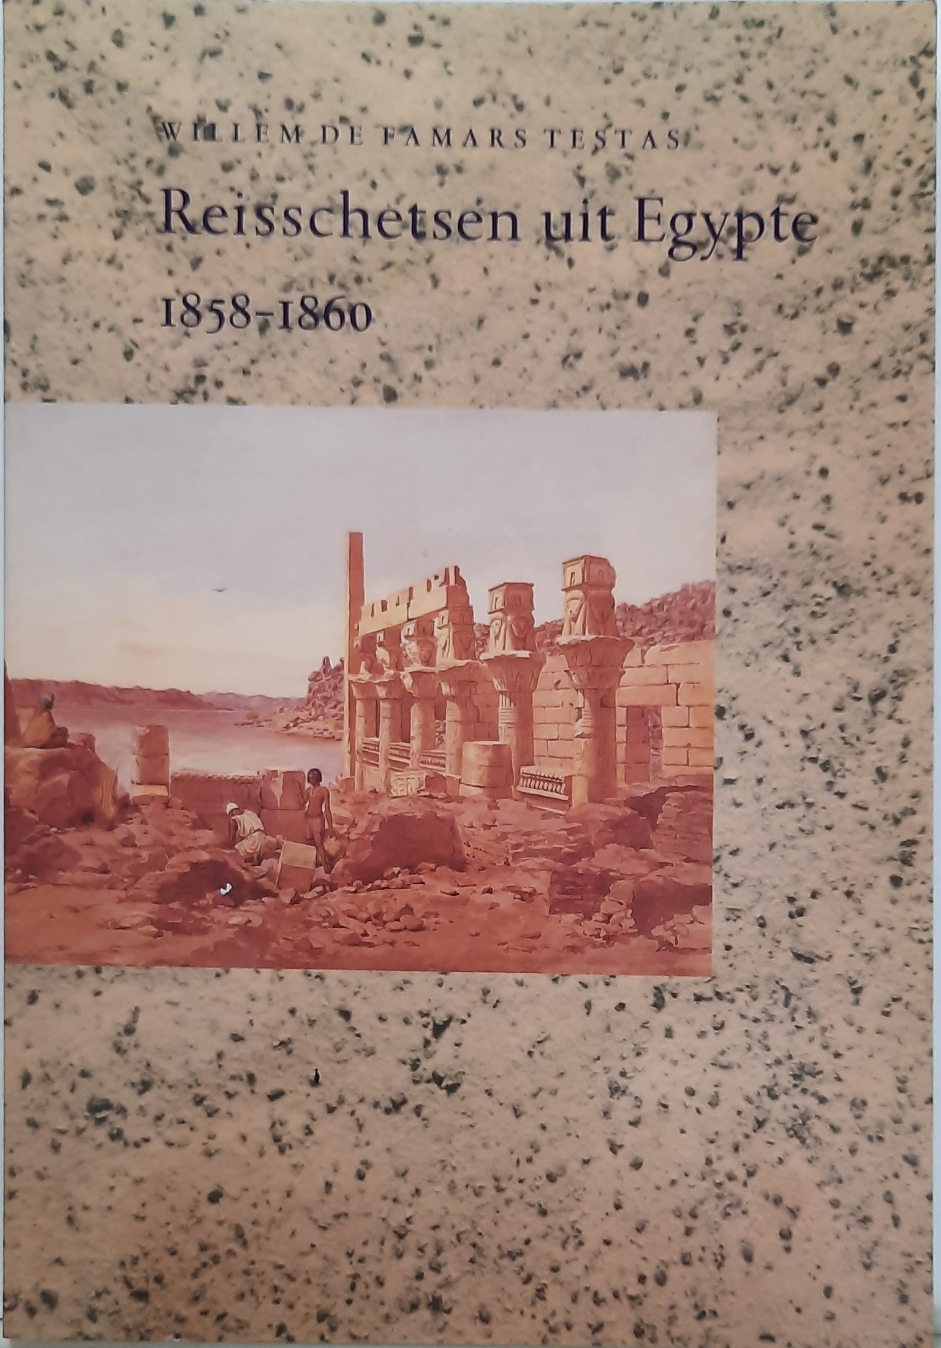 Book cover 202106221301: DE FAMARS TESTAS Willem, [RAVEN Maarten J.] | Reisschetsen uit Egypte 1858-1860 naar ongepubliceerde handschriften bewerkt en geannoteerd door Maarten J. Raven.